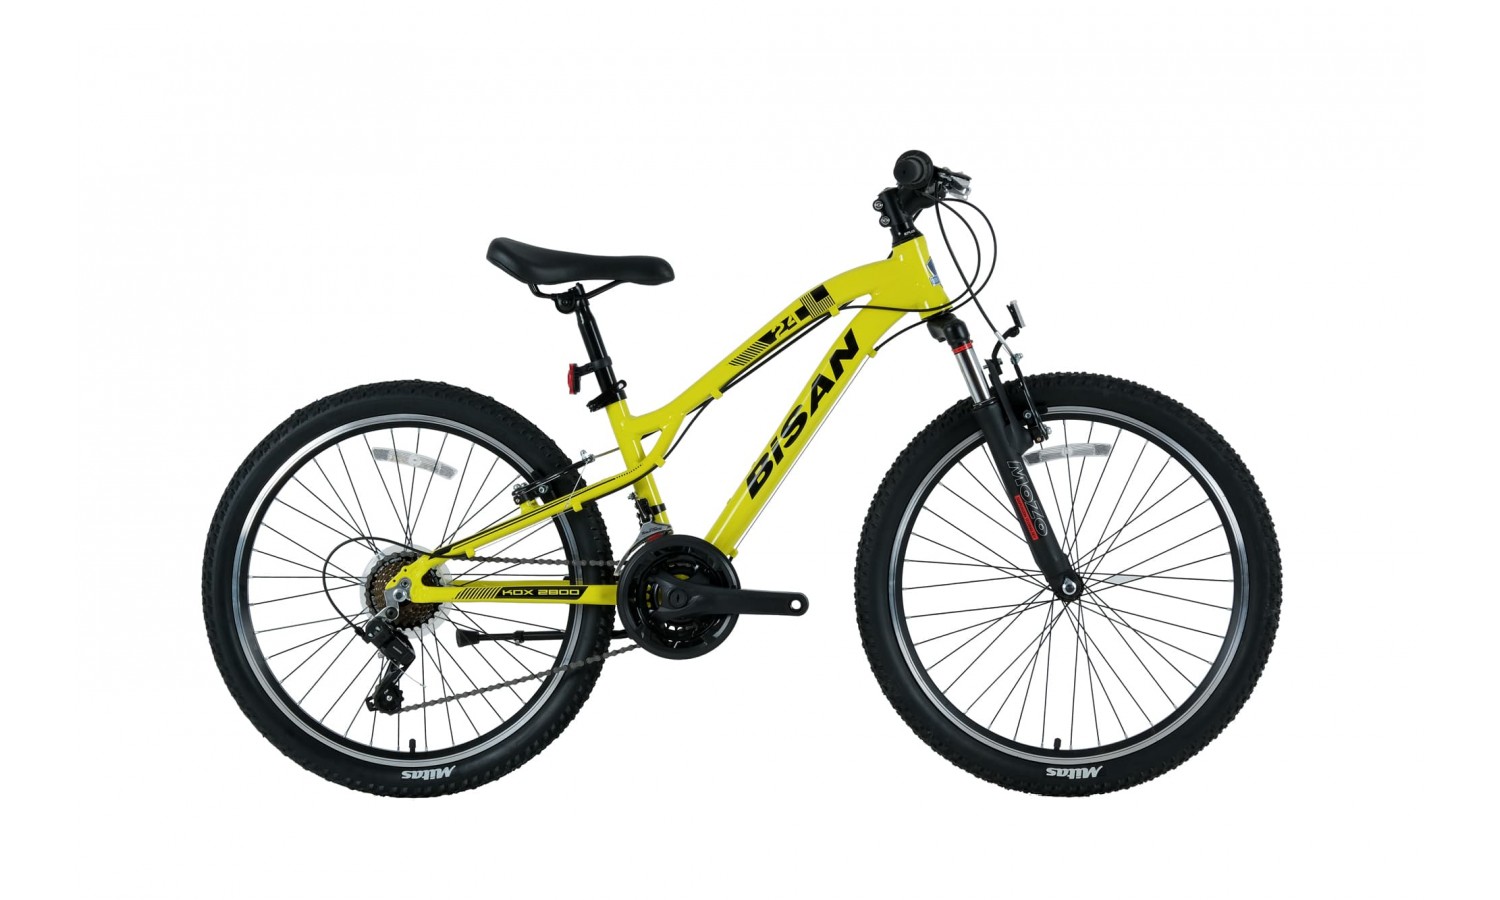 Bisan Kdx 2800 24 Jant V Fren Dağ Bisikleti (Sarı Siyah)